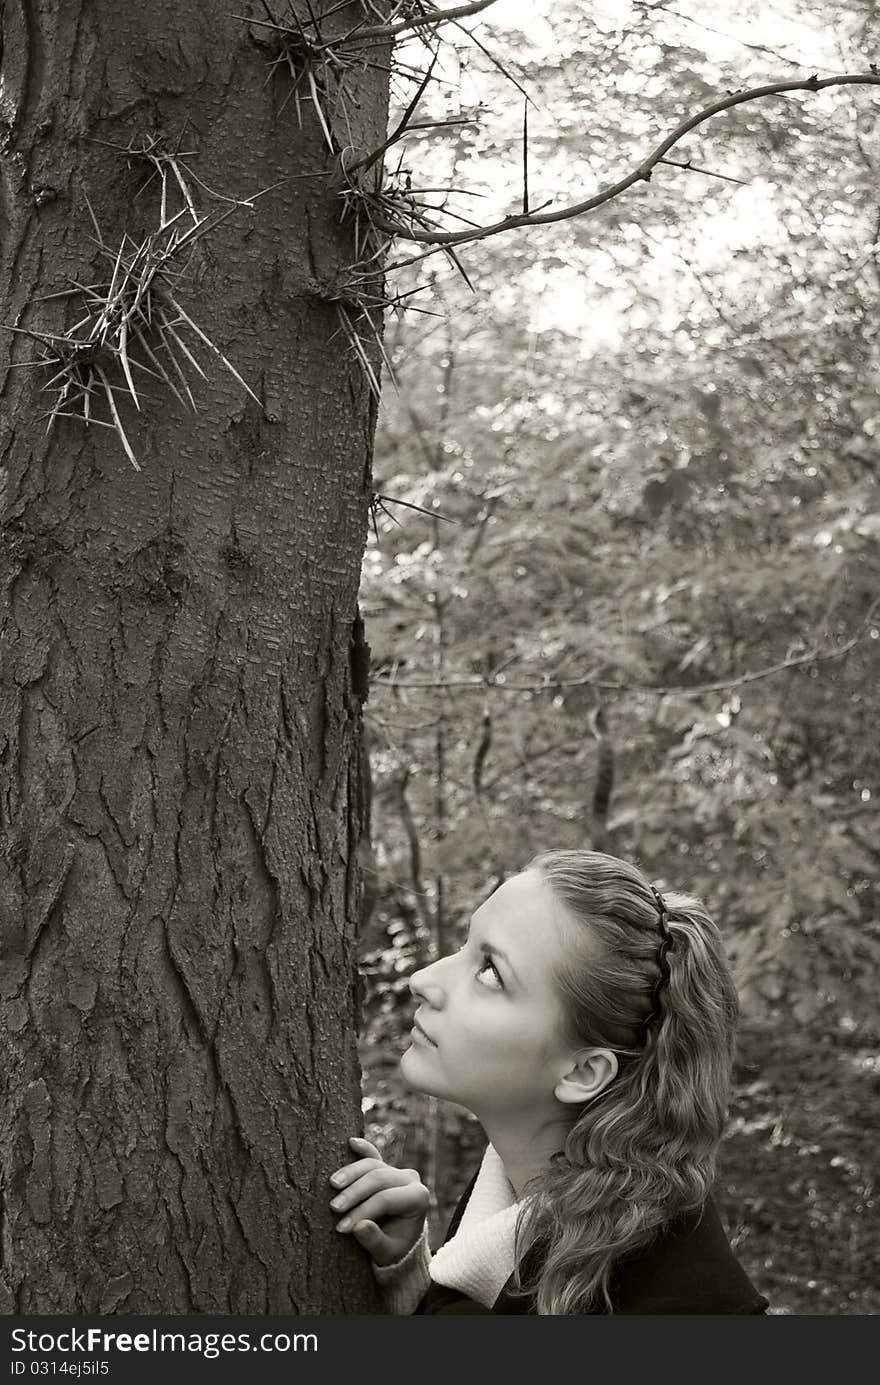 Innocent girl looks at the dangerous needles on a dark tree trunk. Innocent girl looks at the dangerous needles on a dark tree trunk